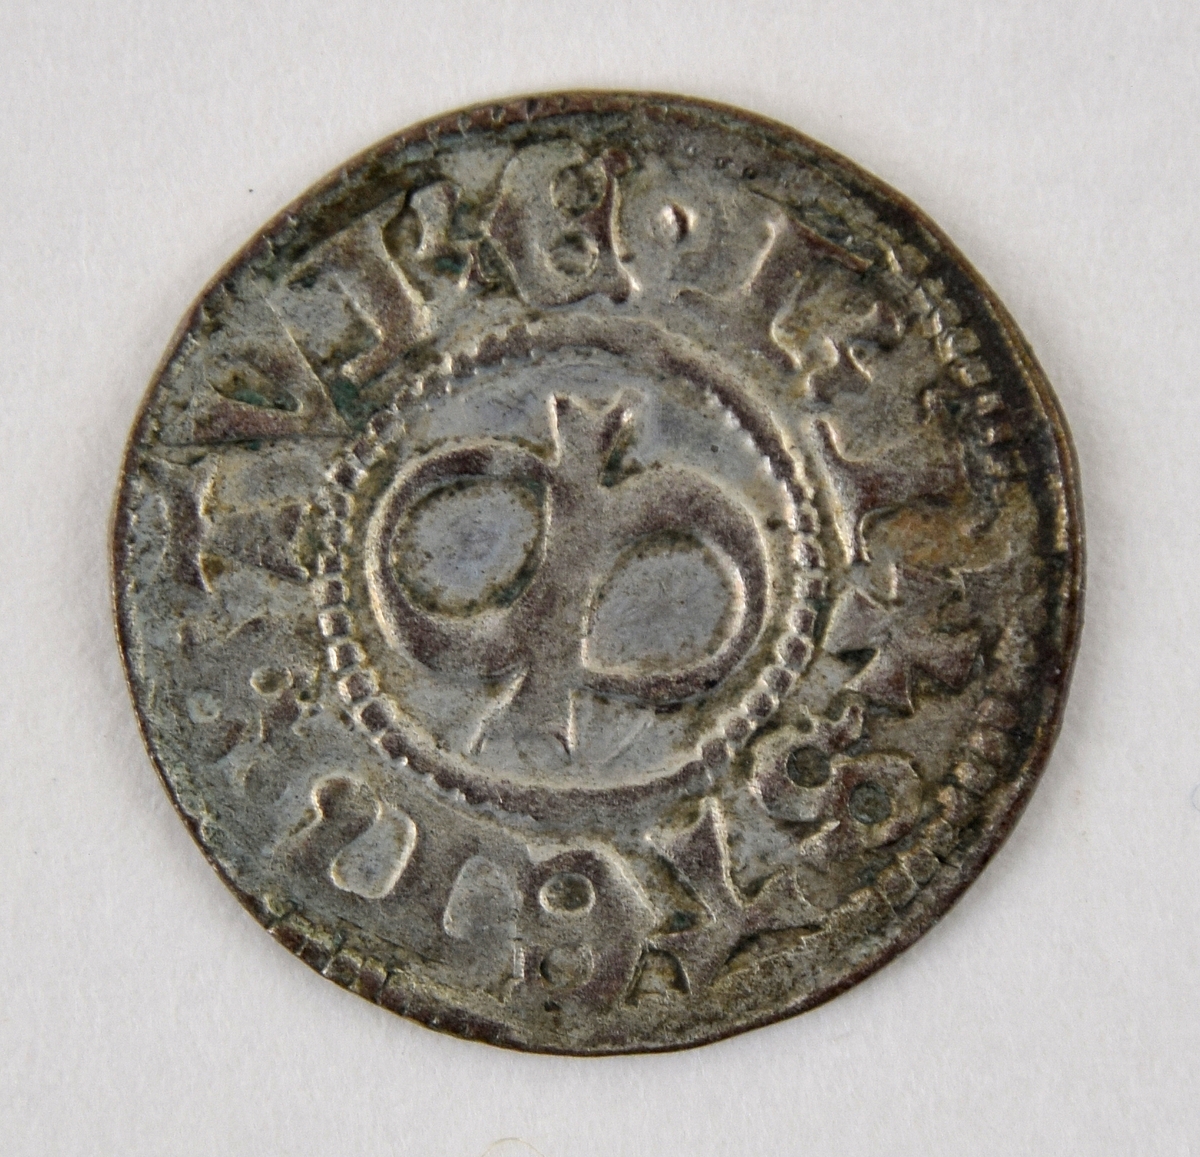 Två (a och b) likartade medeltida silvermynt.
halv örtug
Sten Sture d.y.
Stockholm